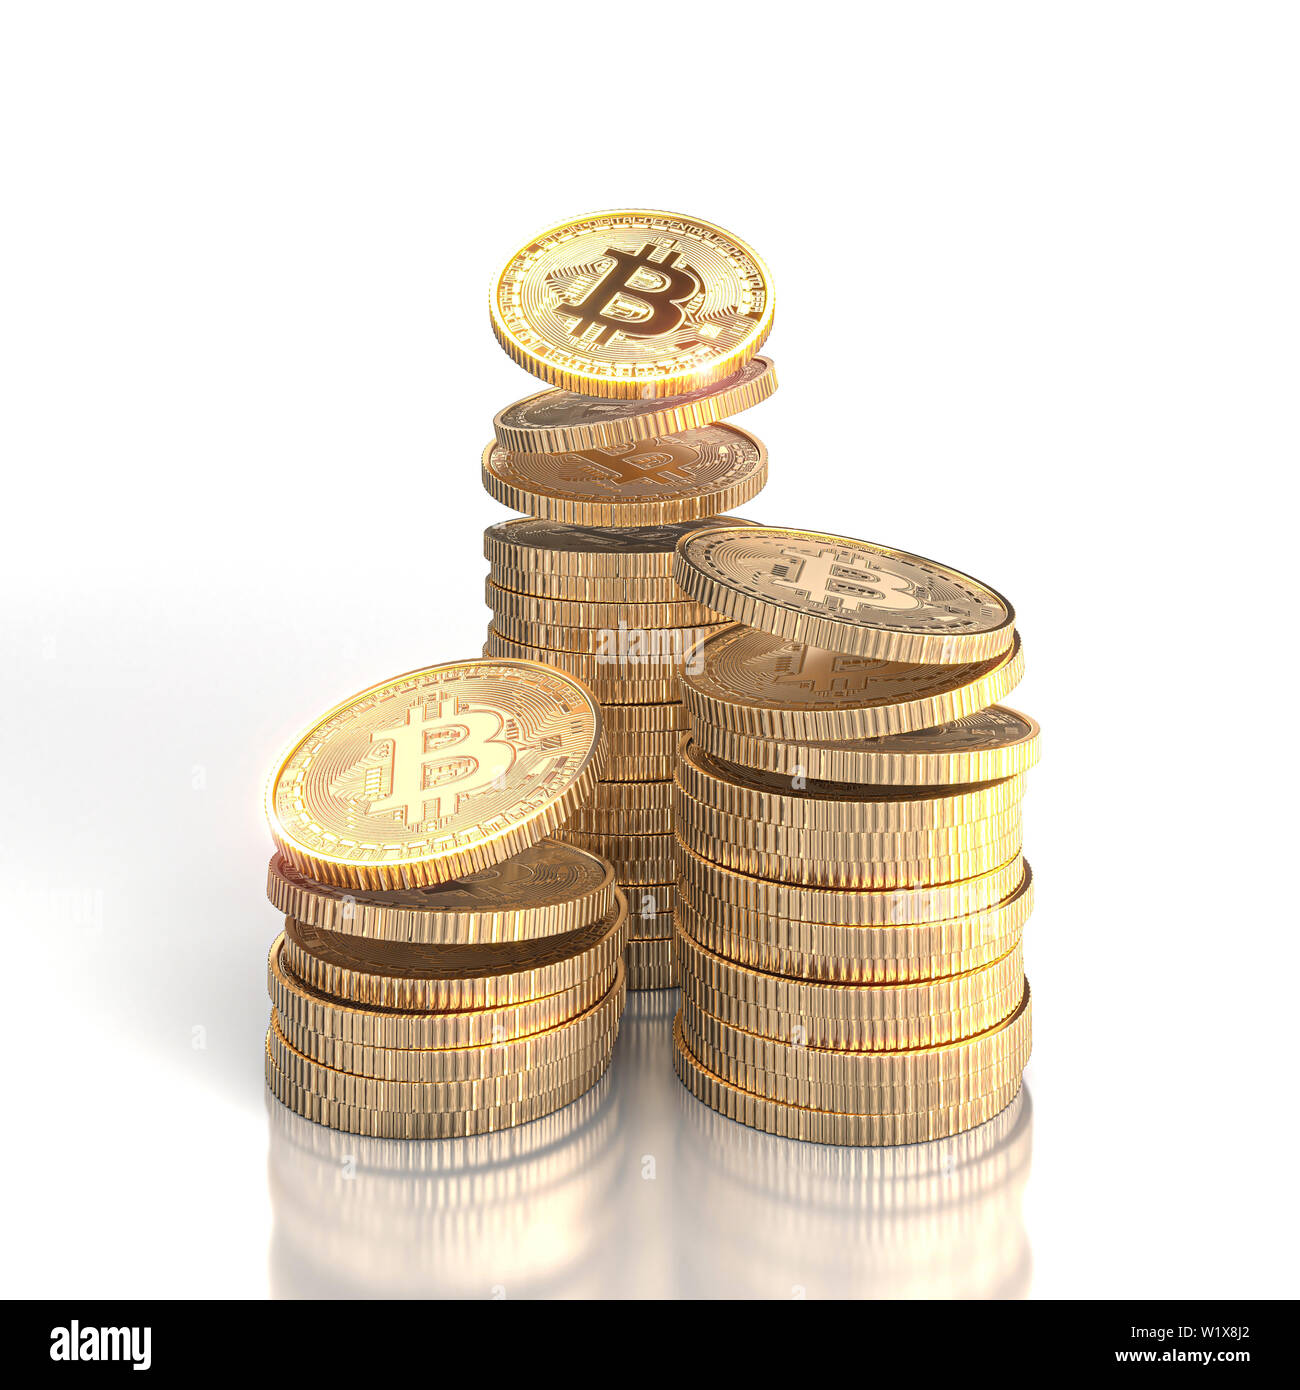 L'image de rendu 3D de piles de pièces d'or bitcoin sur un fond blanc. concept de monnaie électronique et blockchain Banque D'Images